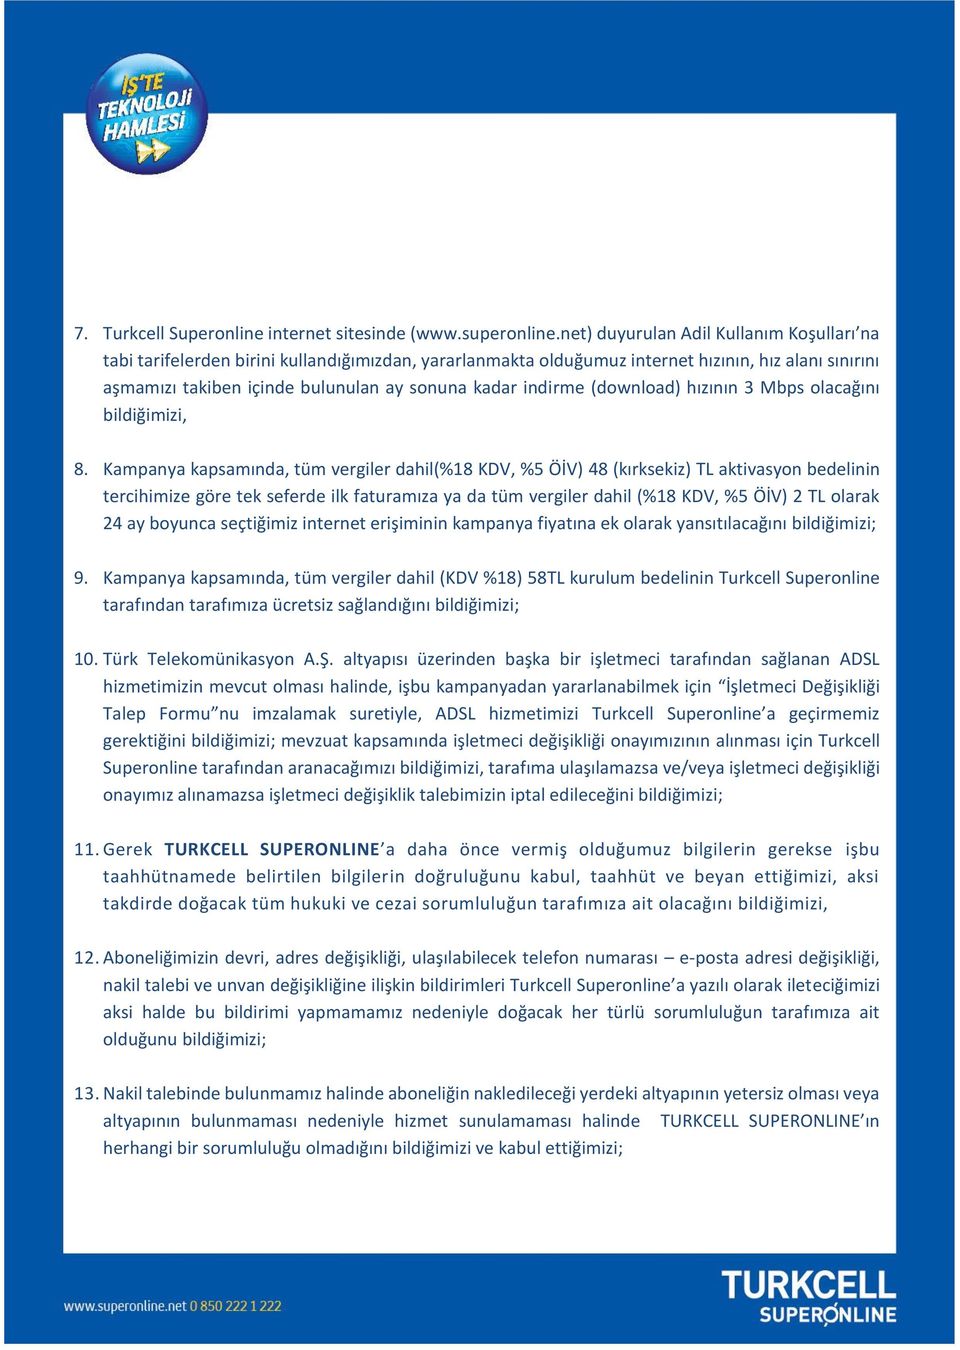 Superonline İletişim Hizmetleri A.Ş. Abonelik Sözleşmesi Eki Turkcell  Superonline a Gelen Kazanır Kampanya Taahhütnamesi - PDF Free Download